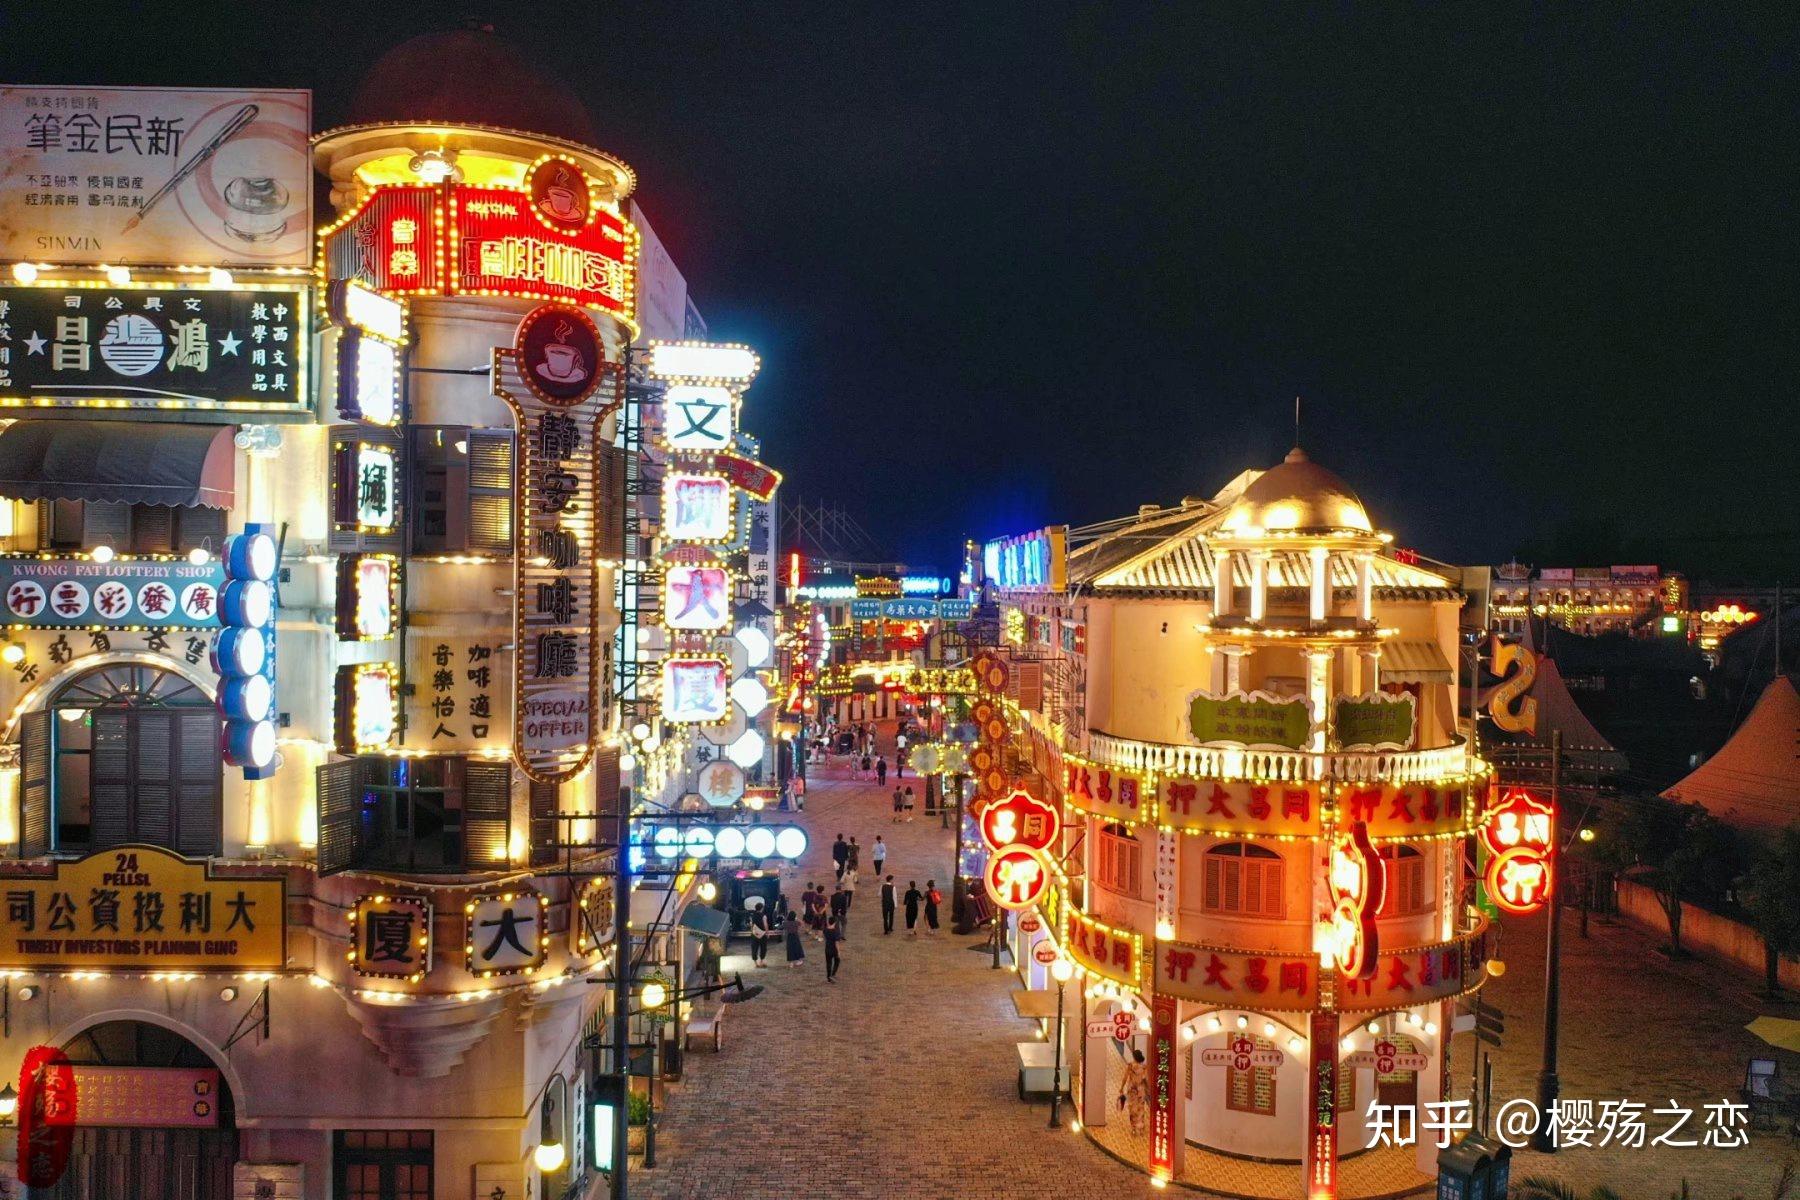 广州街占地面积300多亩,生动形象地再现了鸦片战争前后广州的市井风貌